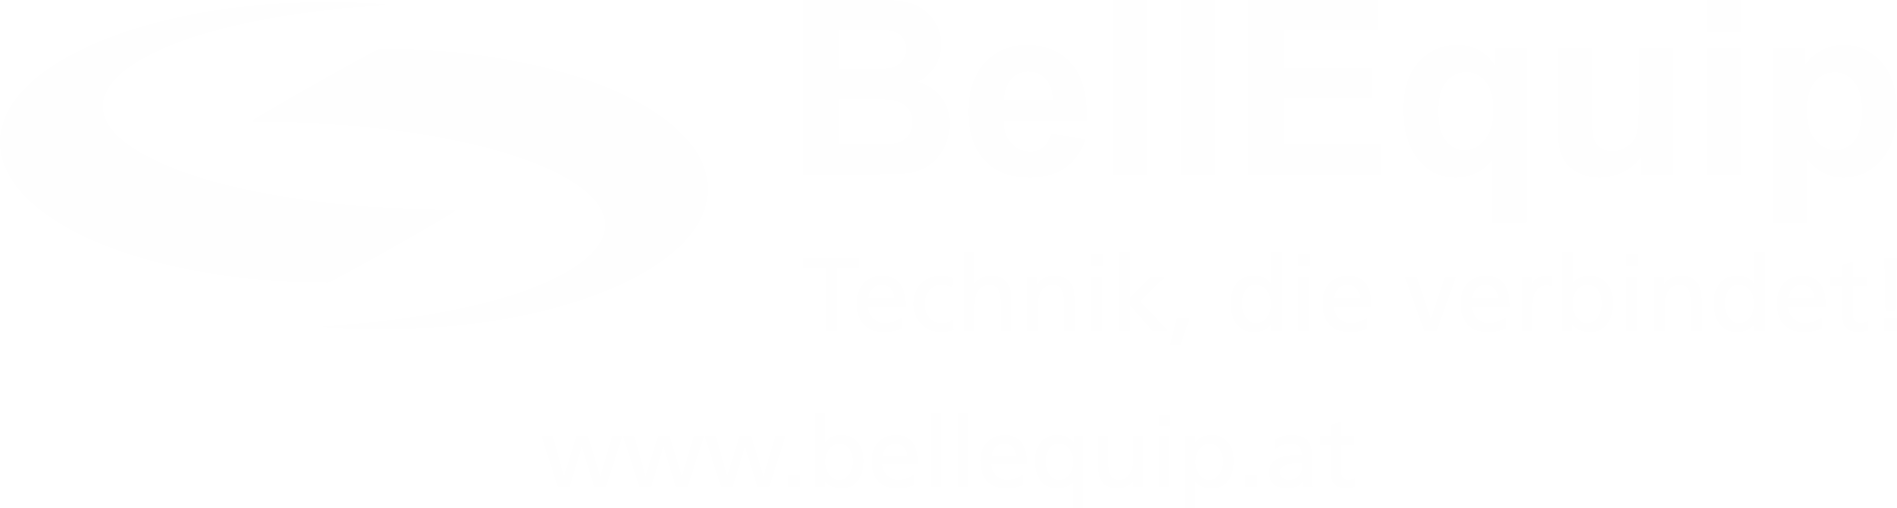 BellEquip GmbH